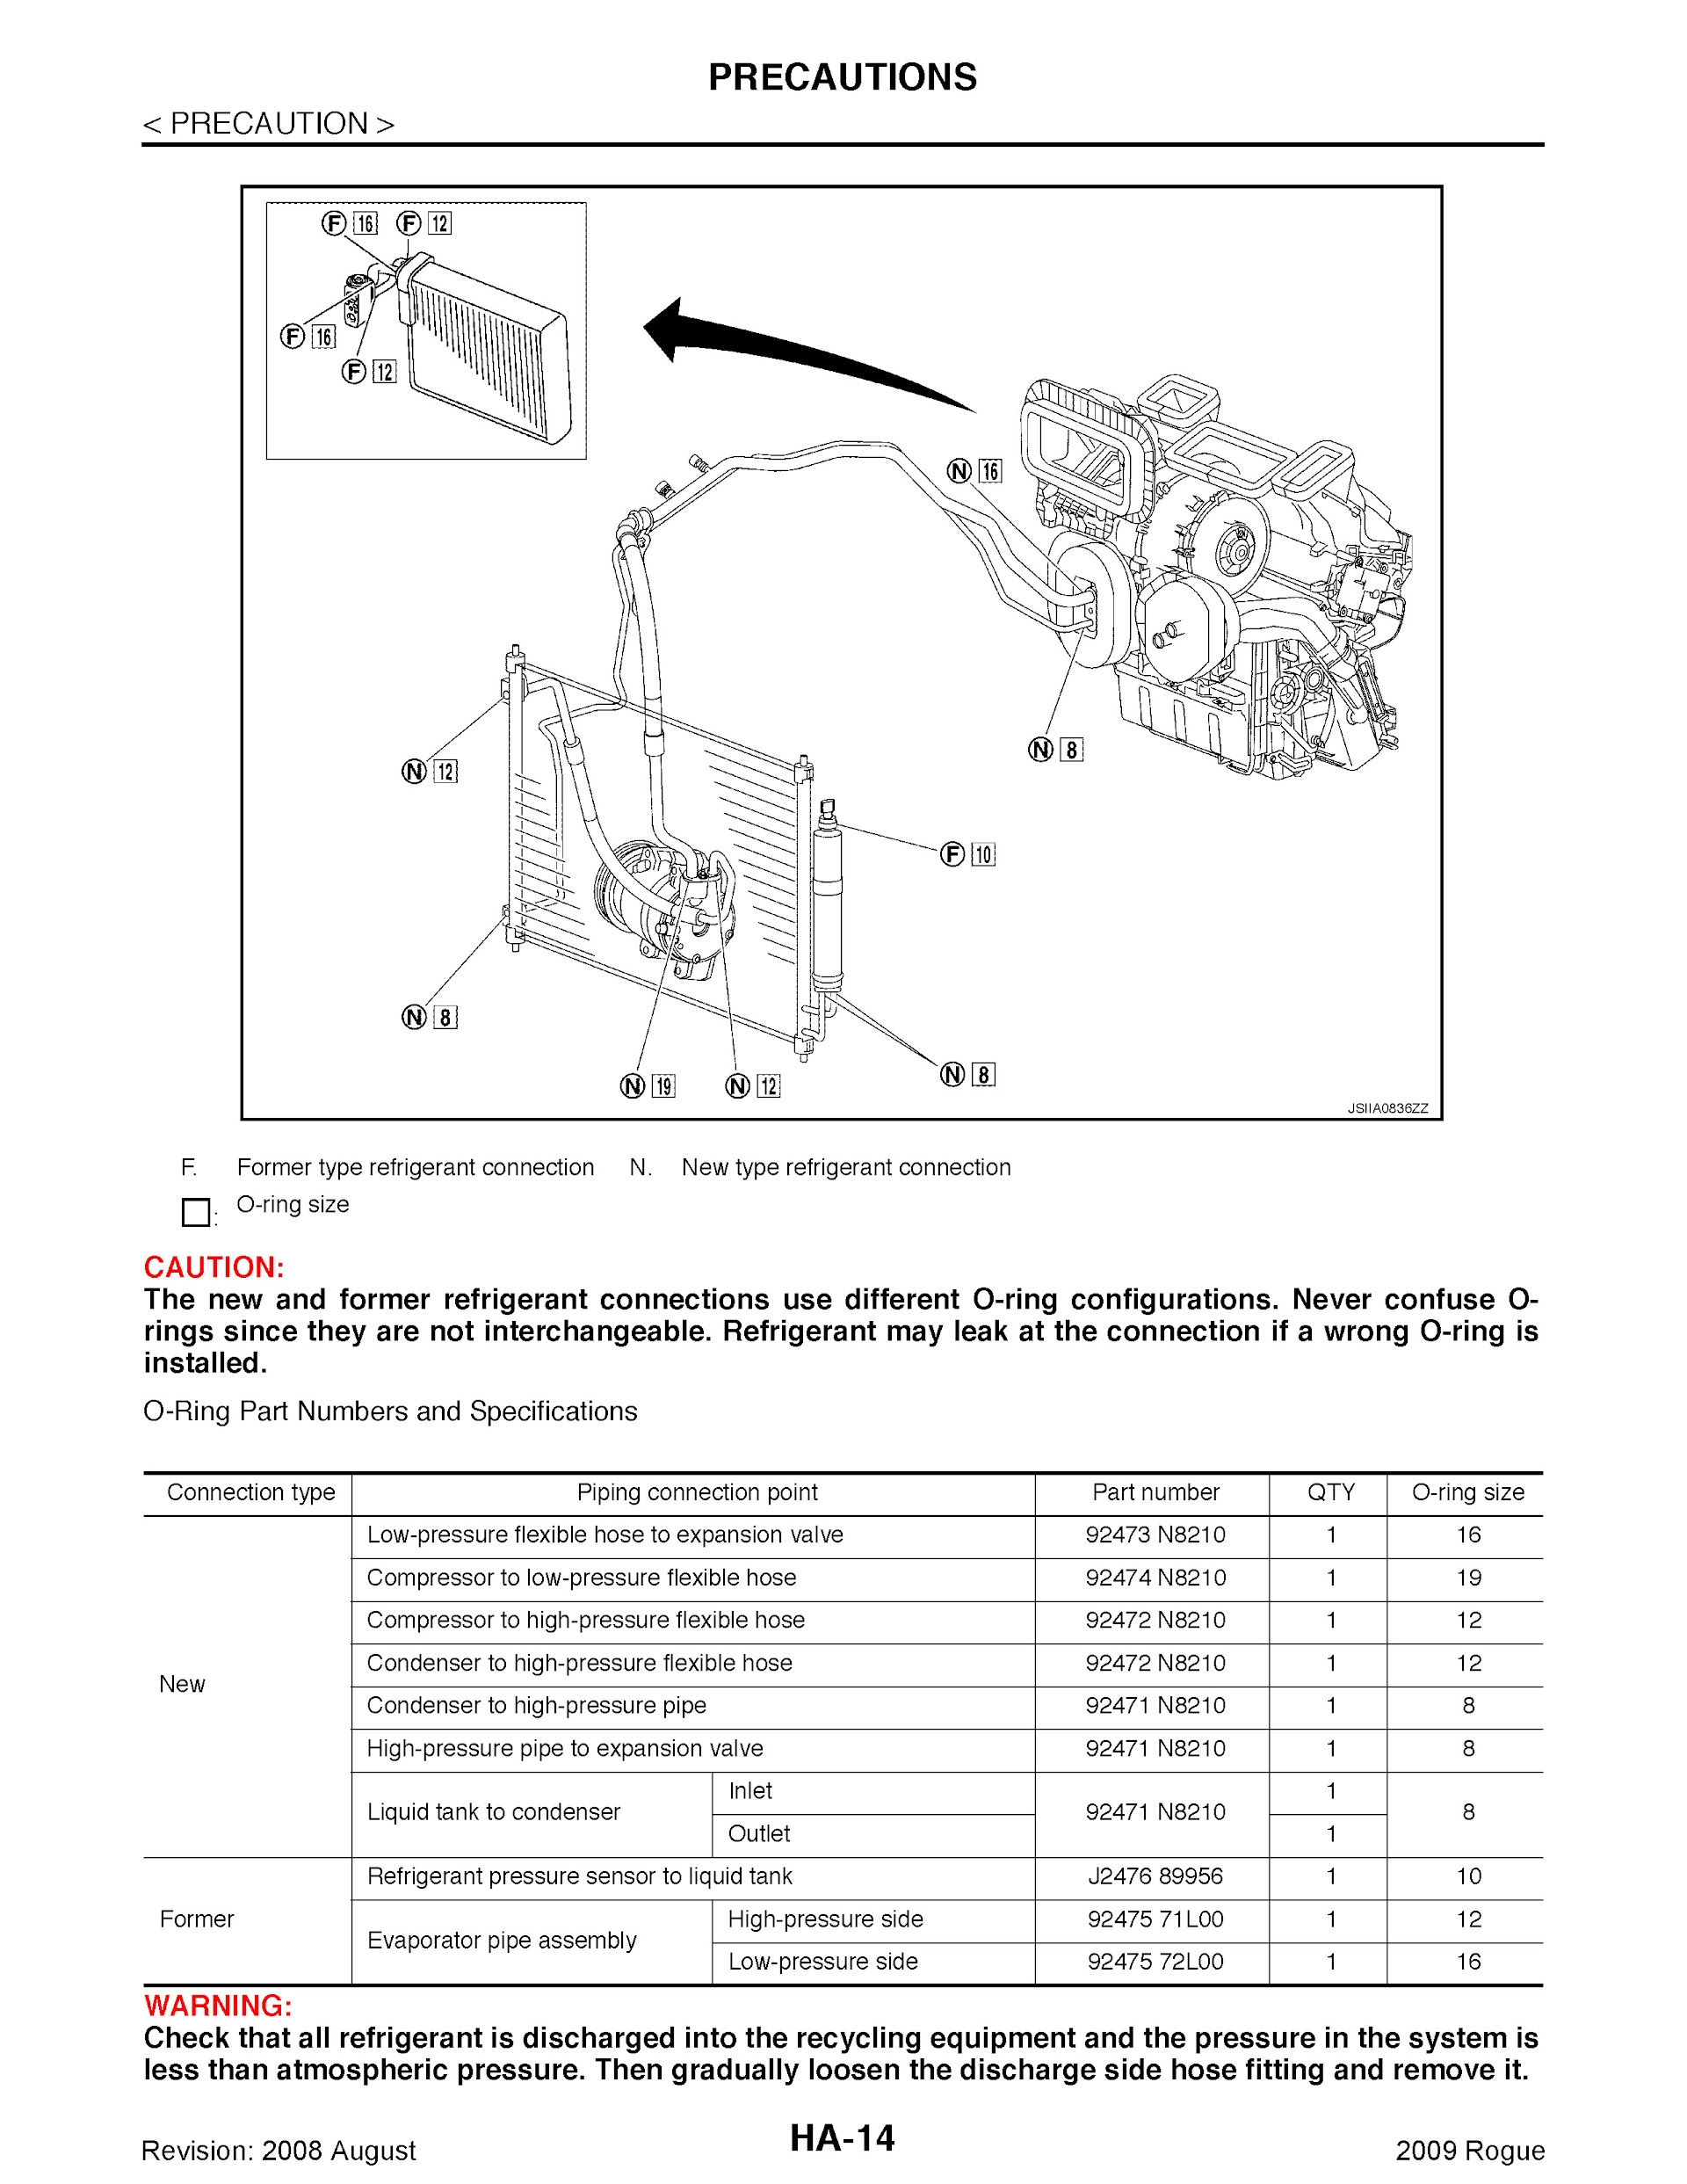 Download 2009 Nissan Rogue Repair Manual.